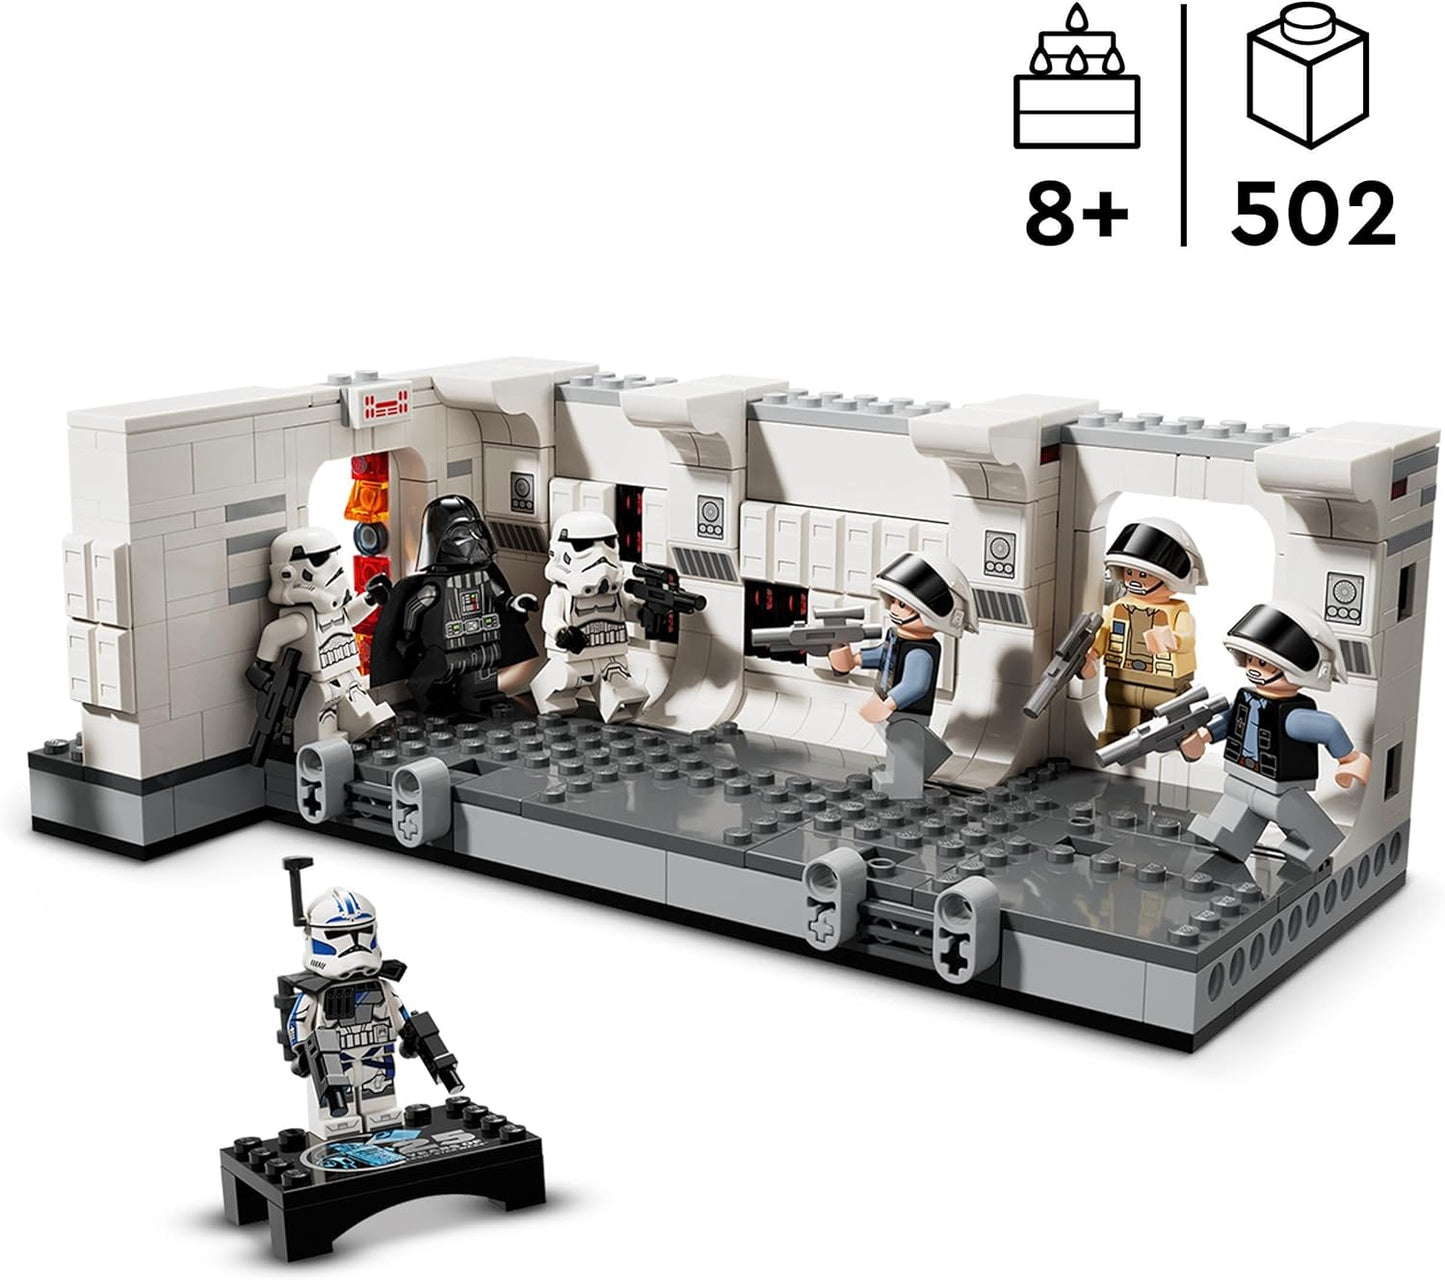 LEGO Star Wars embarcando no conjunto Tantive IV, um brinquedo montável New Hope para meninos, meninas e crianças com mais de 8 anos, com 7 minifiguras incl. Darth Vader e ARC Trooper Fives do 25º aniversário, ideia de presente 75387